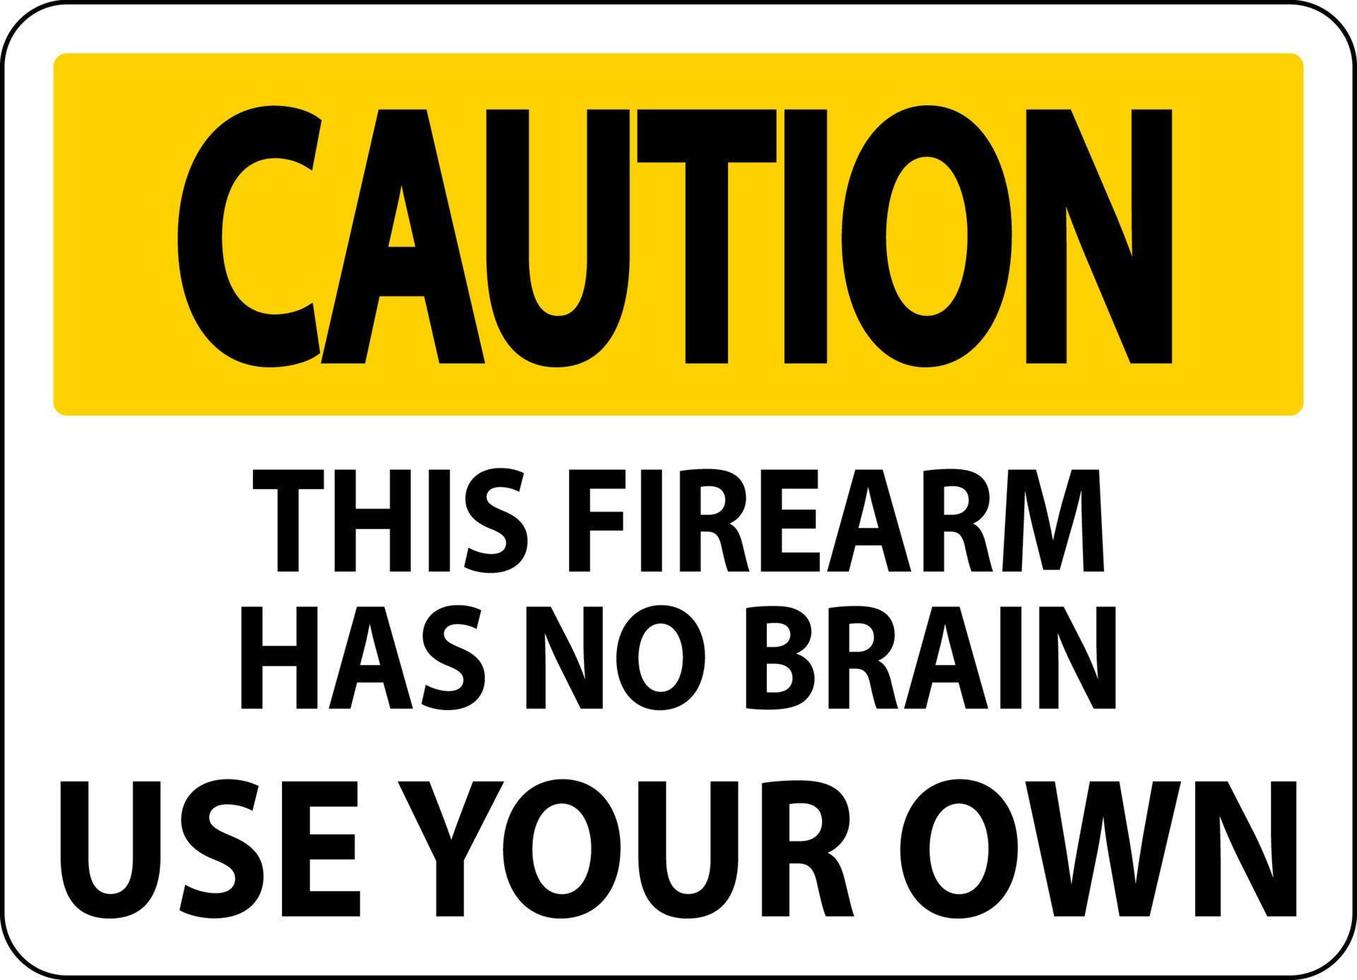 attention propriétaire d'arme à feu signe cette arme à feu n'a pas de cerveau, utilisez le vôtre vecteur